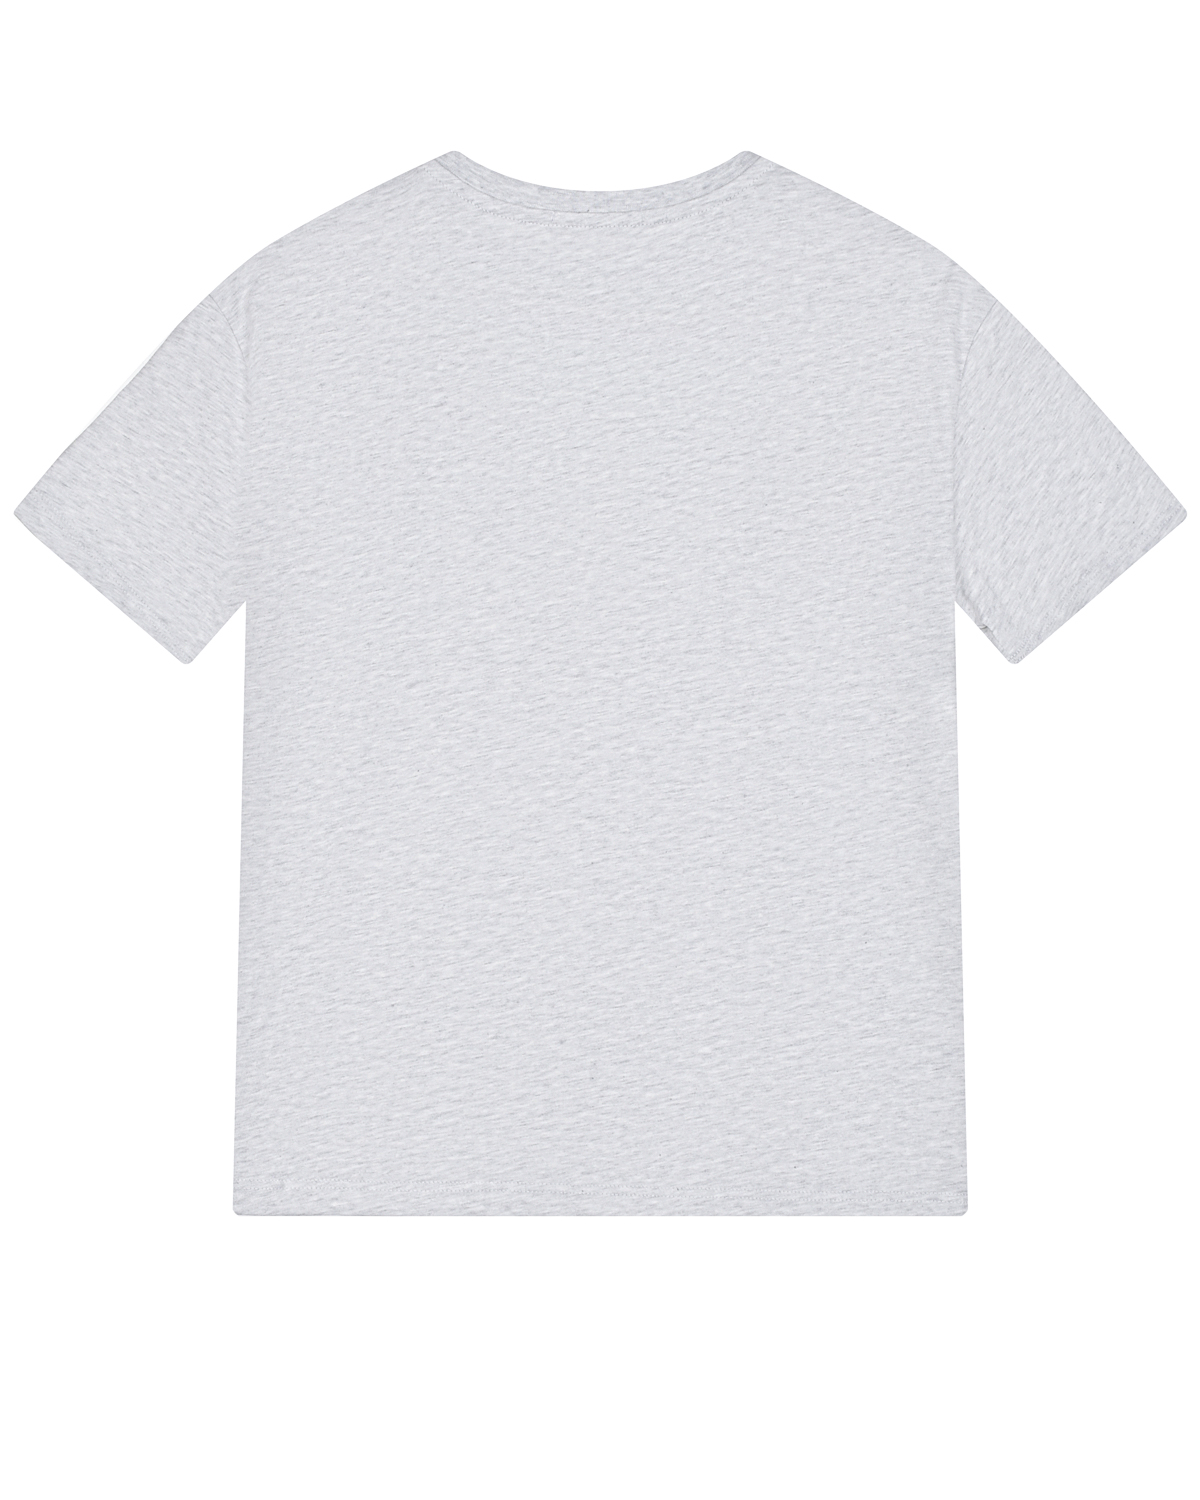 Серая футболка с крупным лого MSGM детская, размер 128, цвет серый - фото 2